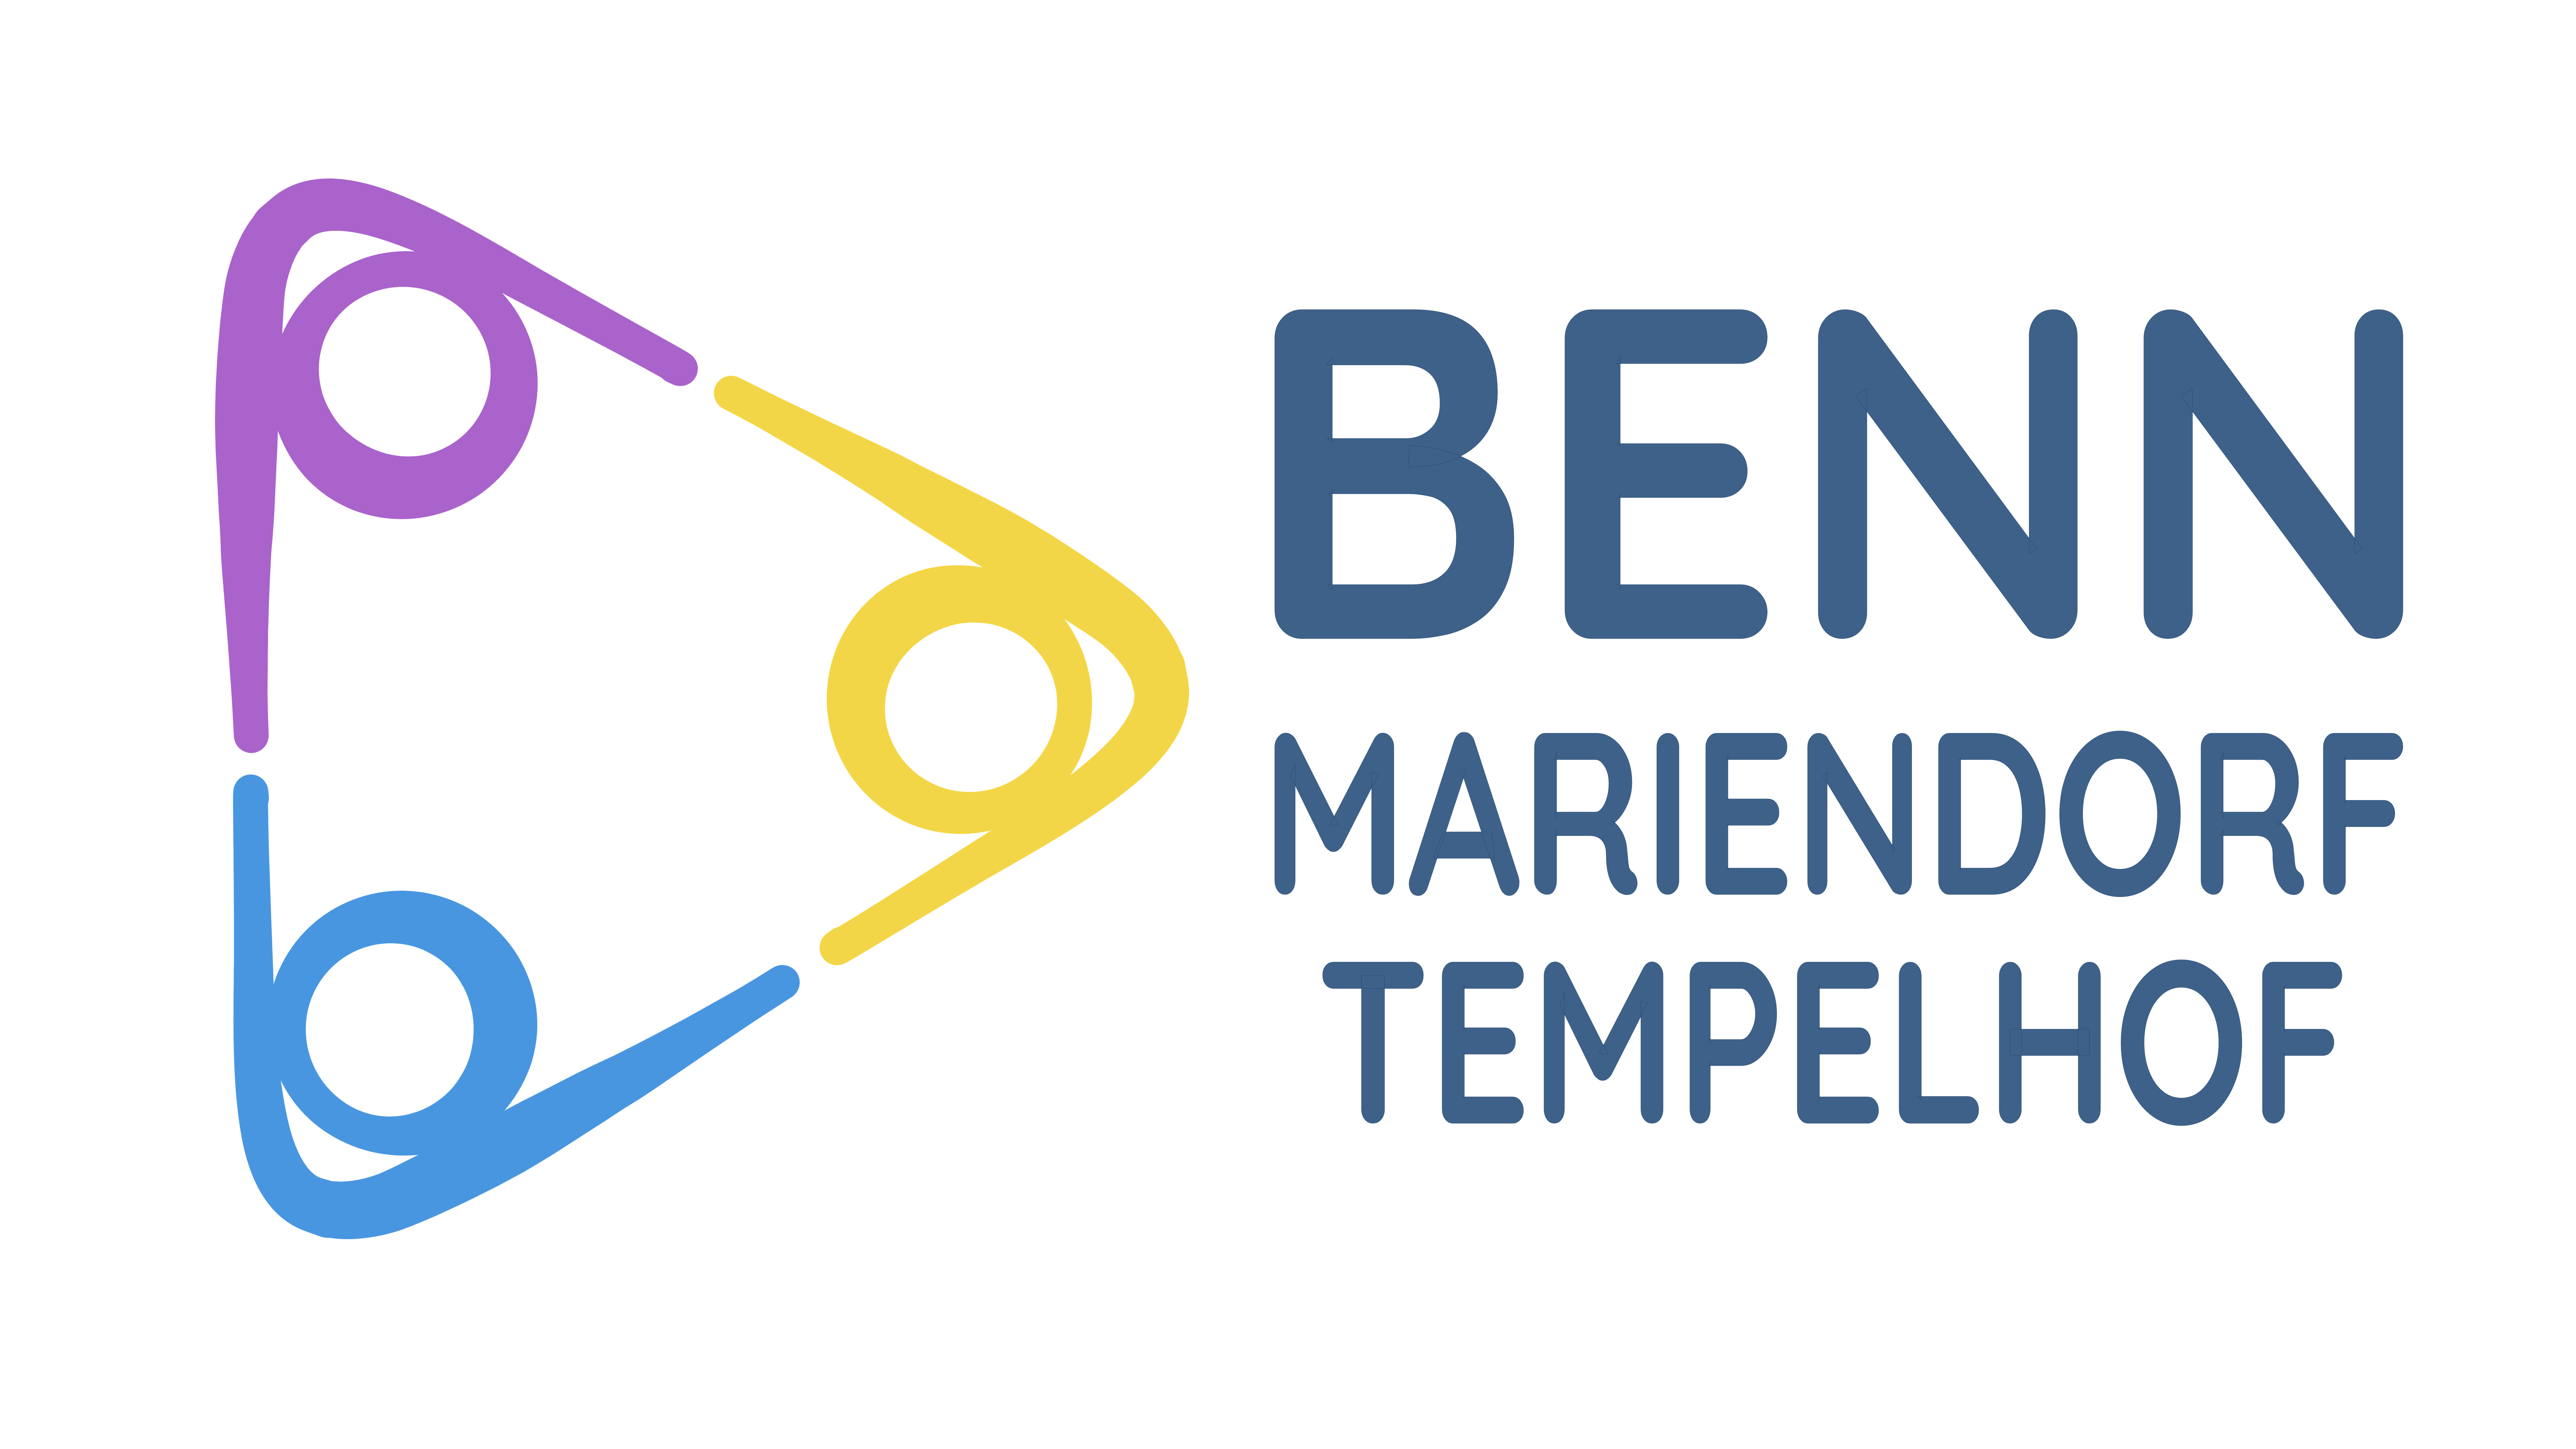 BENN Mariendorf logo